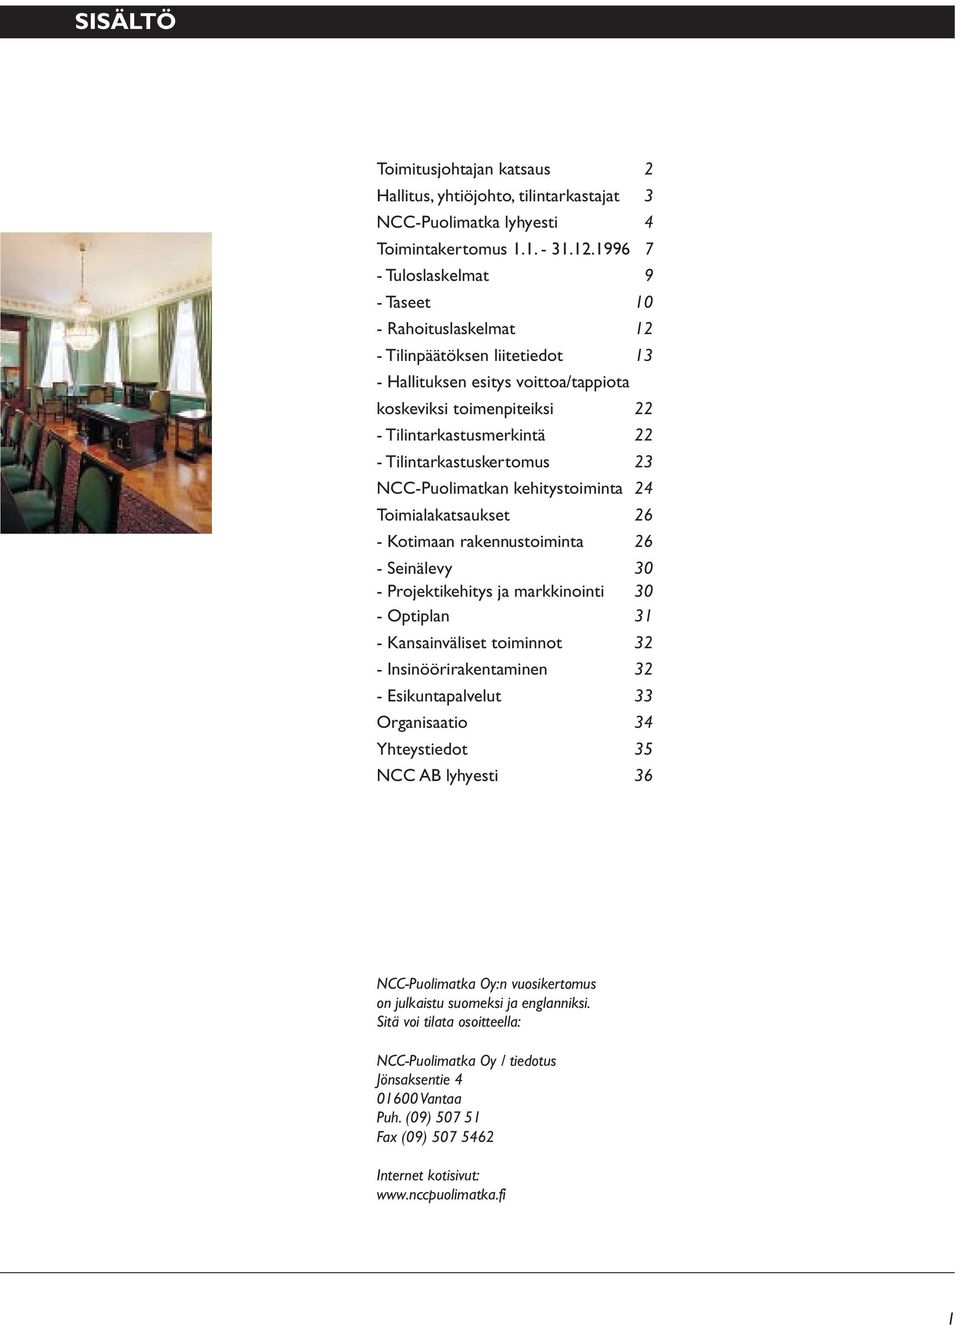 Tilintarkastuskertomus 23 NCC-Puolimatkan kehitystoiminta 24 Toimialakatsaukset 26 - Kotimaan rakennustoiminta 26 - Seinälevy 30 - Projektikehitys ja markkinointi 30 - Optiplan 31 - Kansainväliset